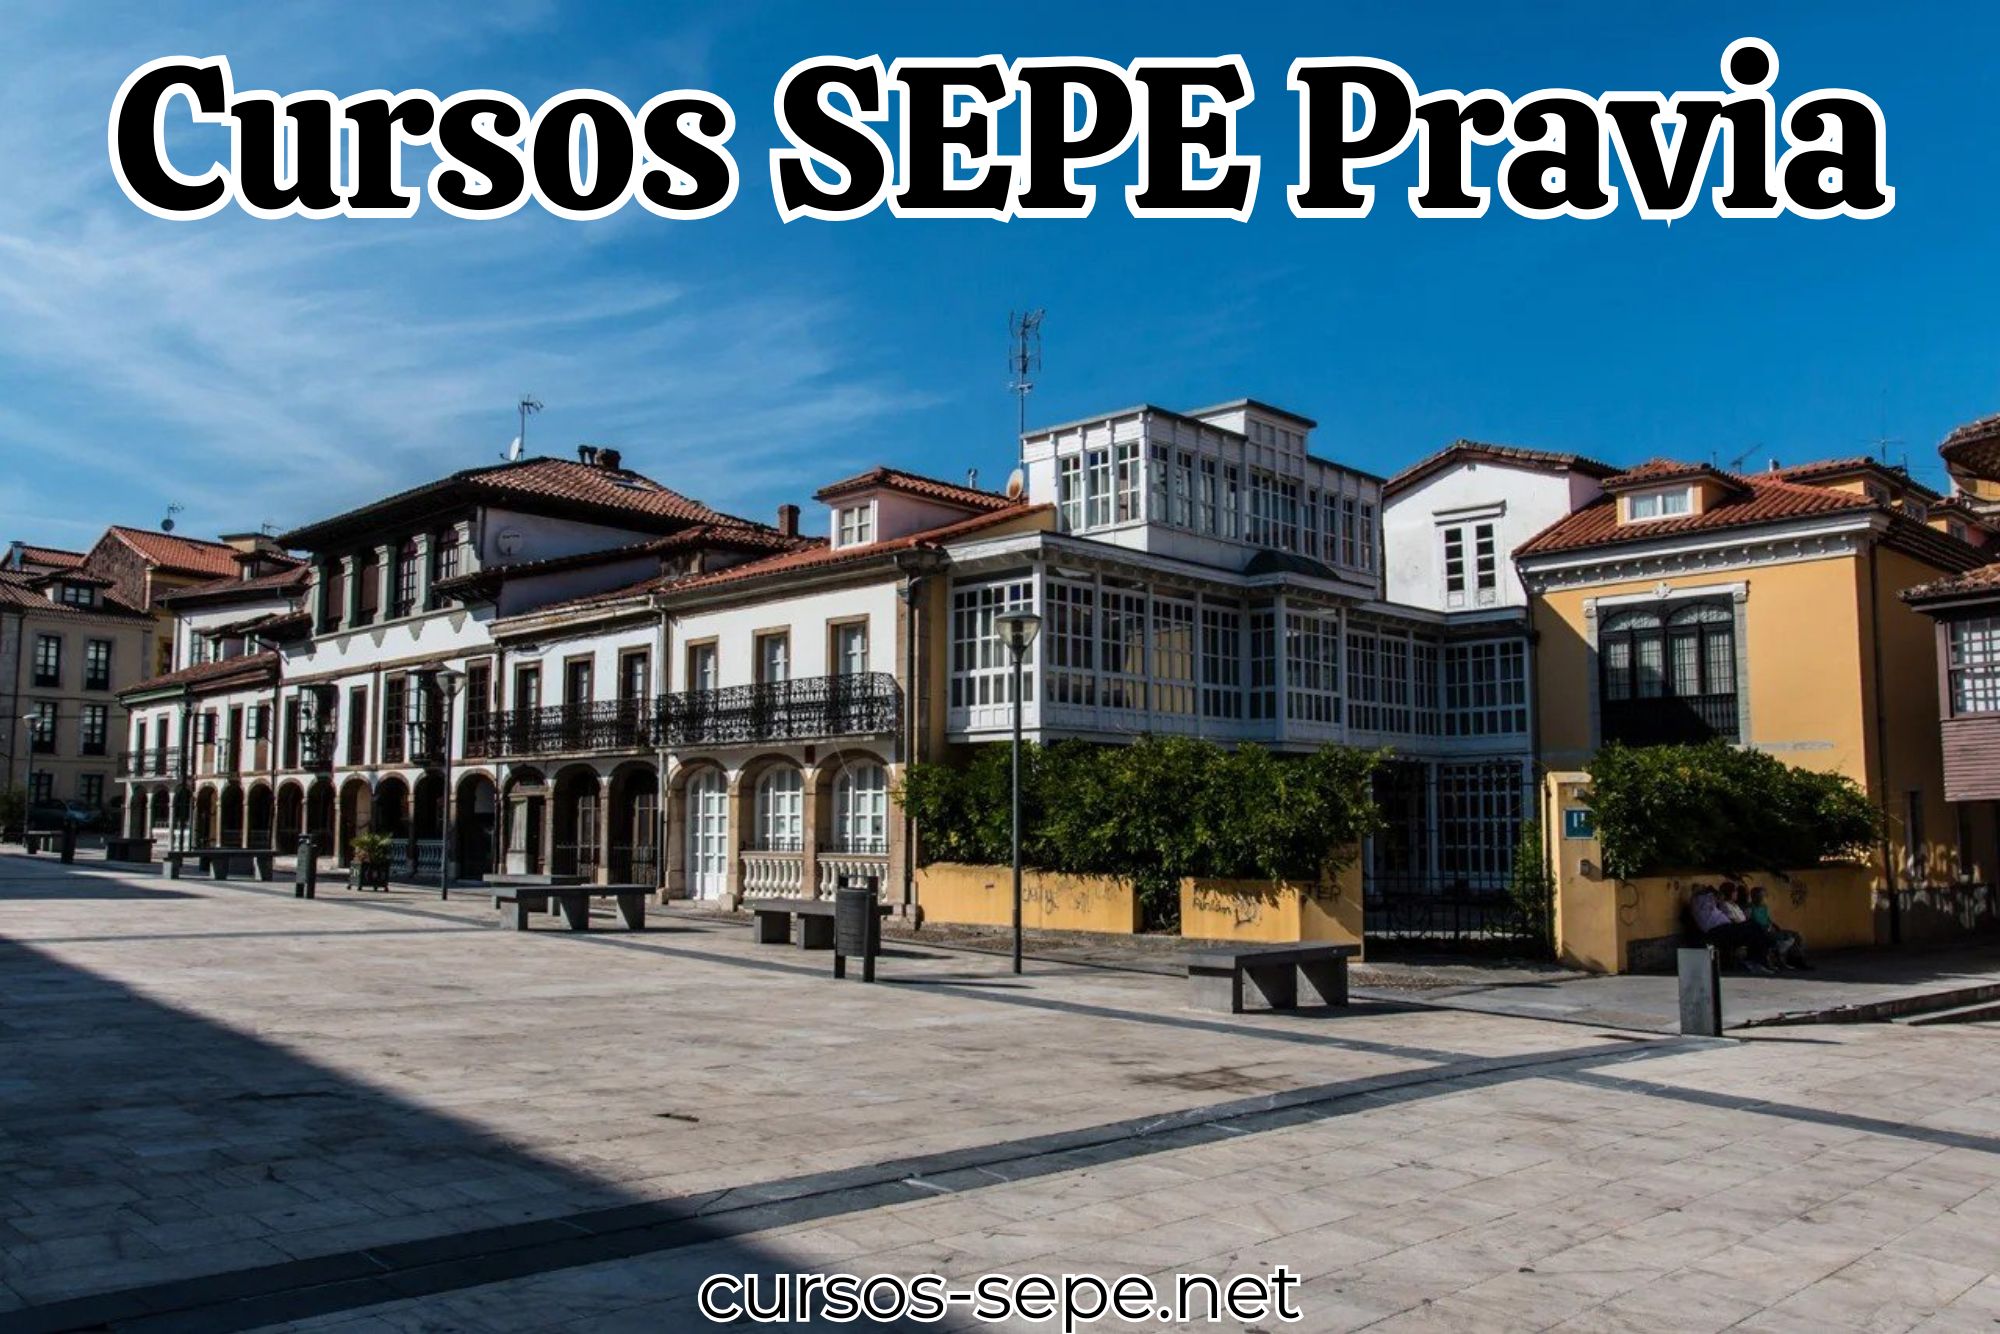 Cursos SEPE para poder realizar en el municipio de Pravia (Asturias)